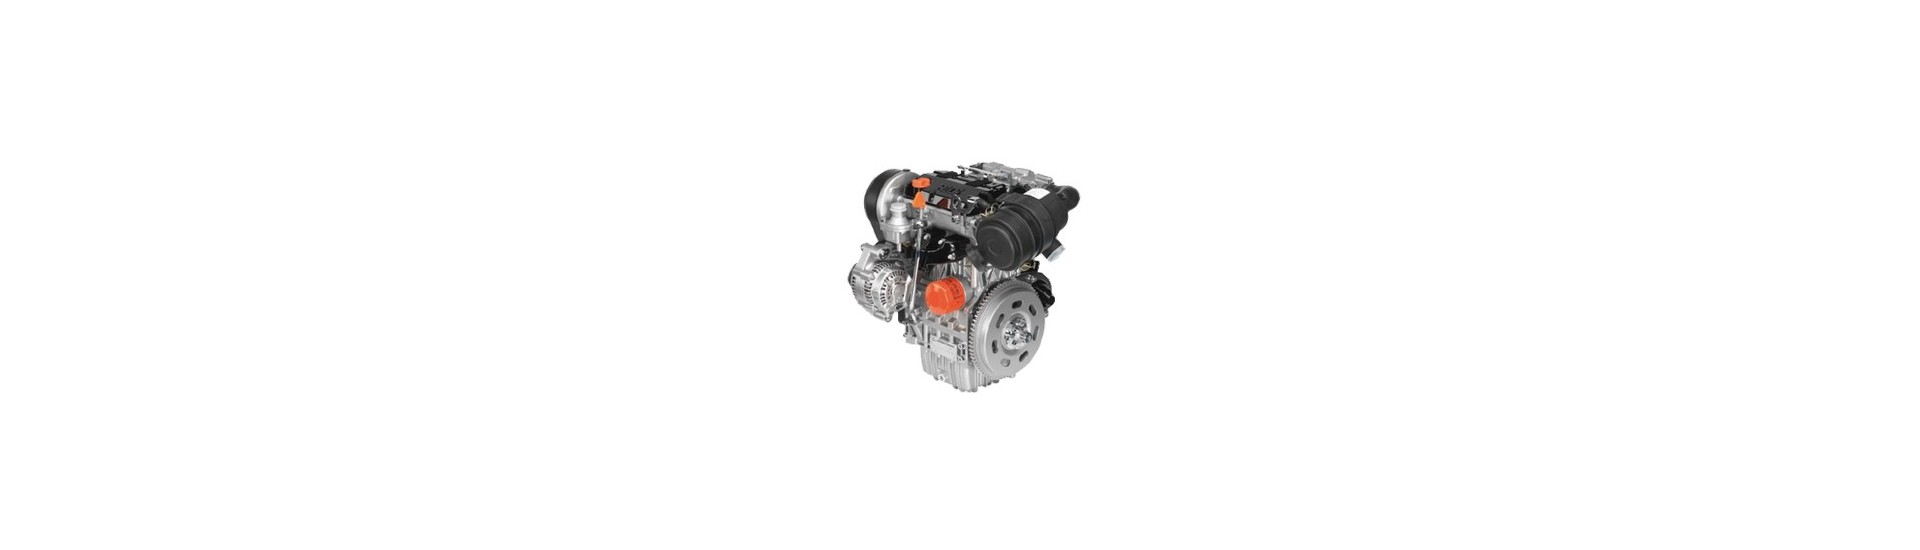 Parti di motore usate al miglior prezzo per il motore Lombardini essence 523 MPI